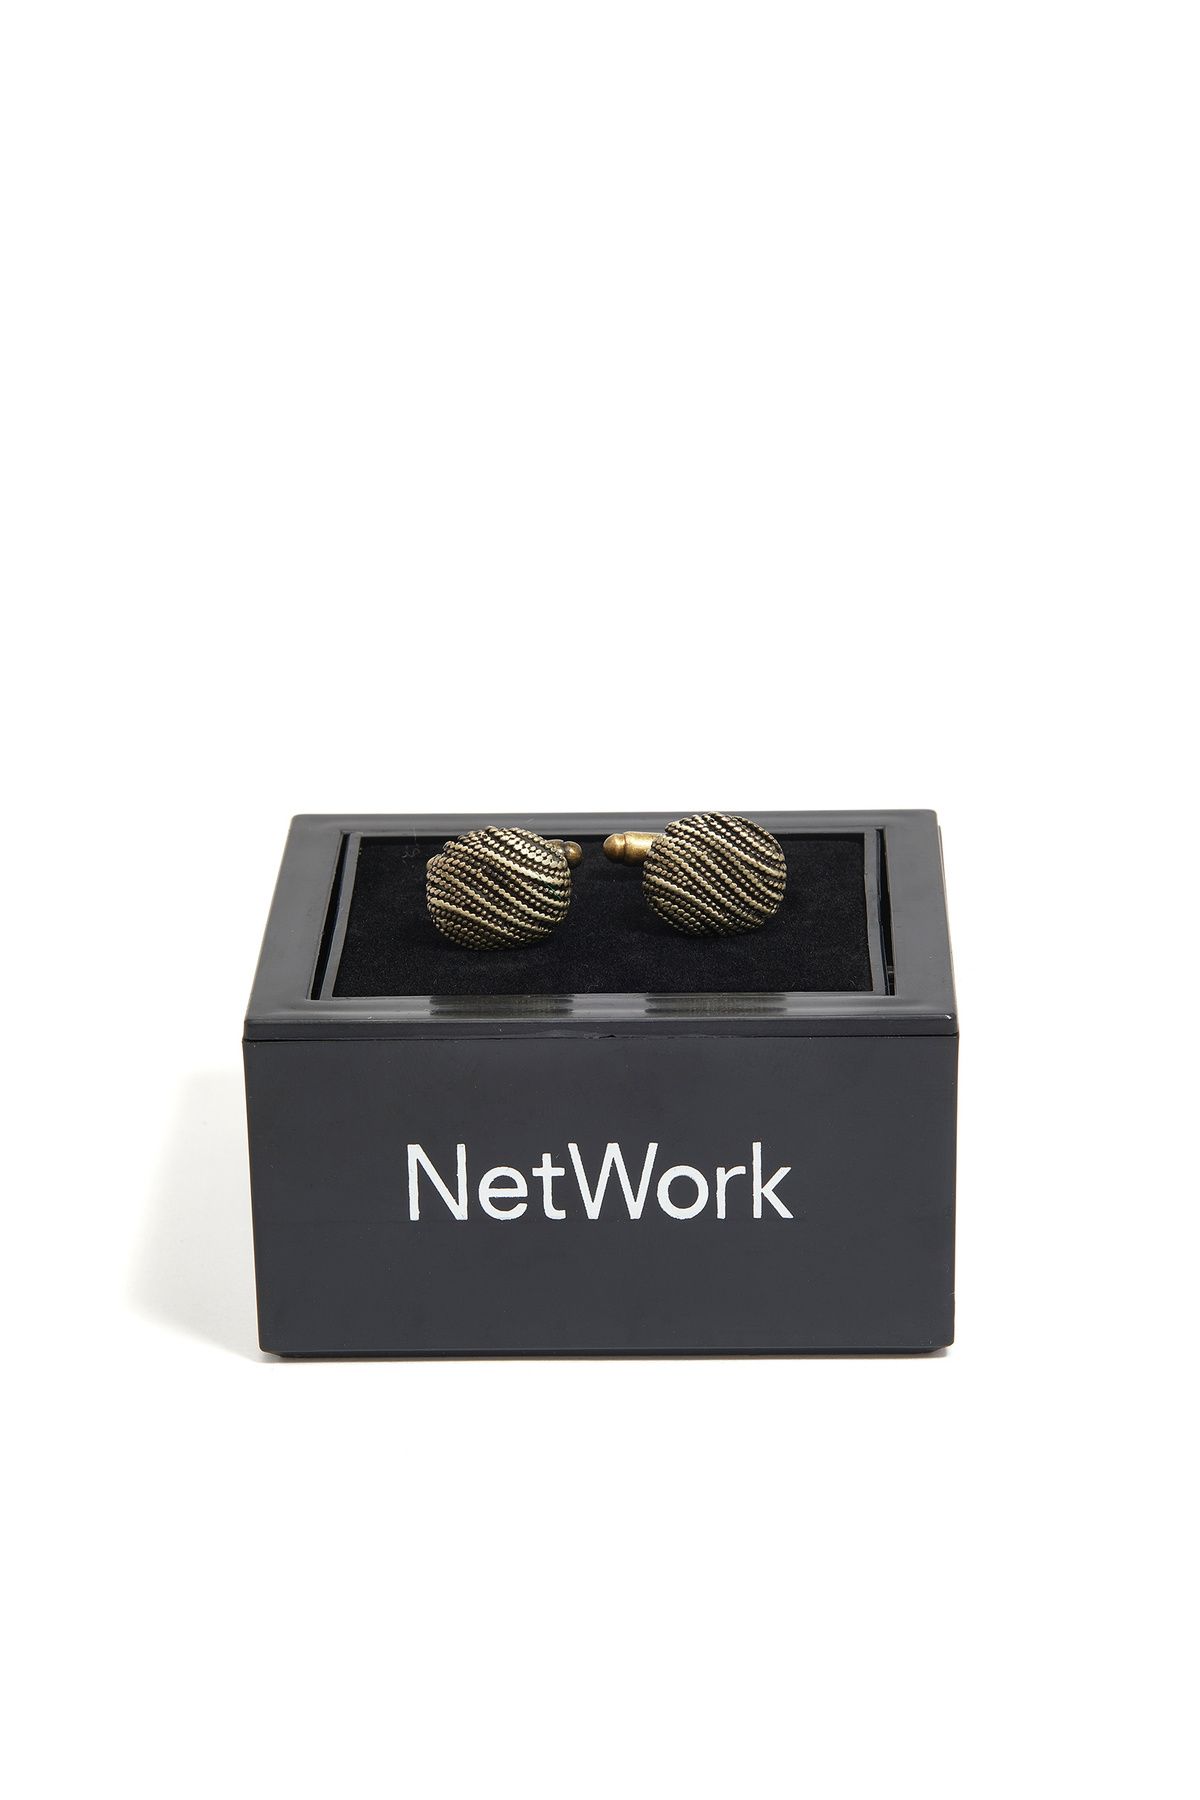 Network Gold Kol Düğmesi